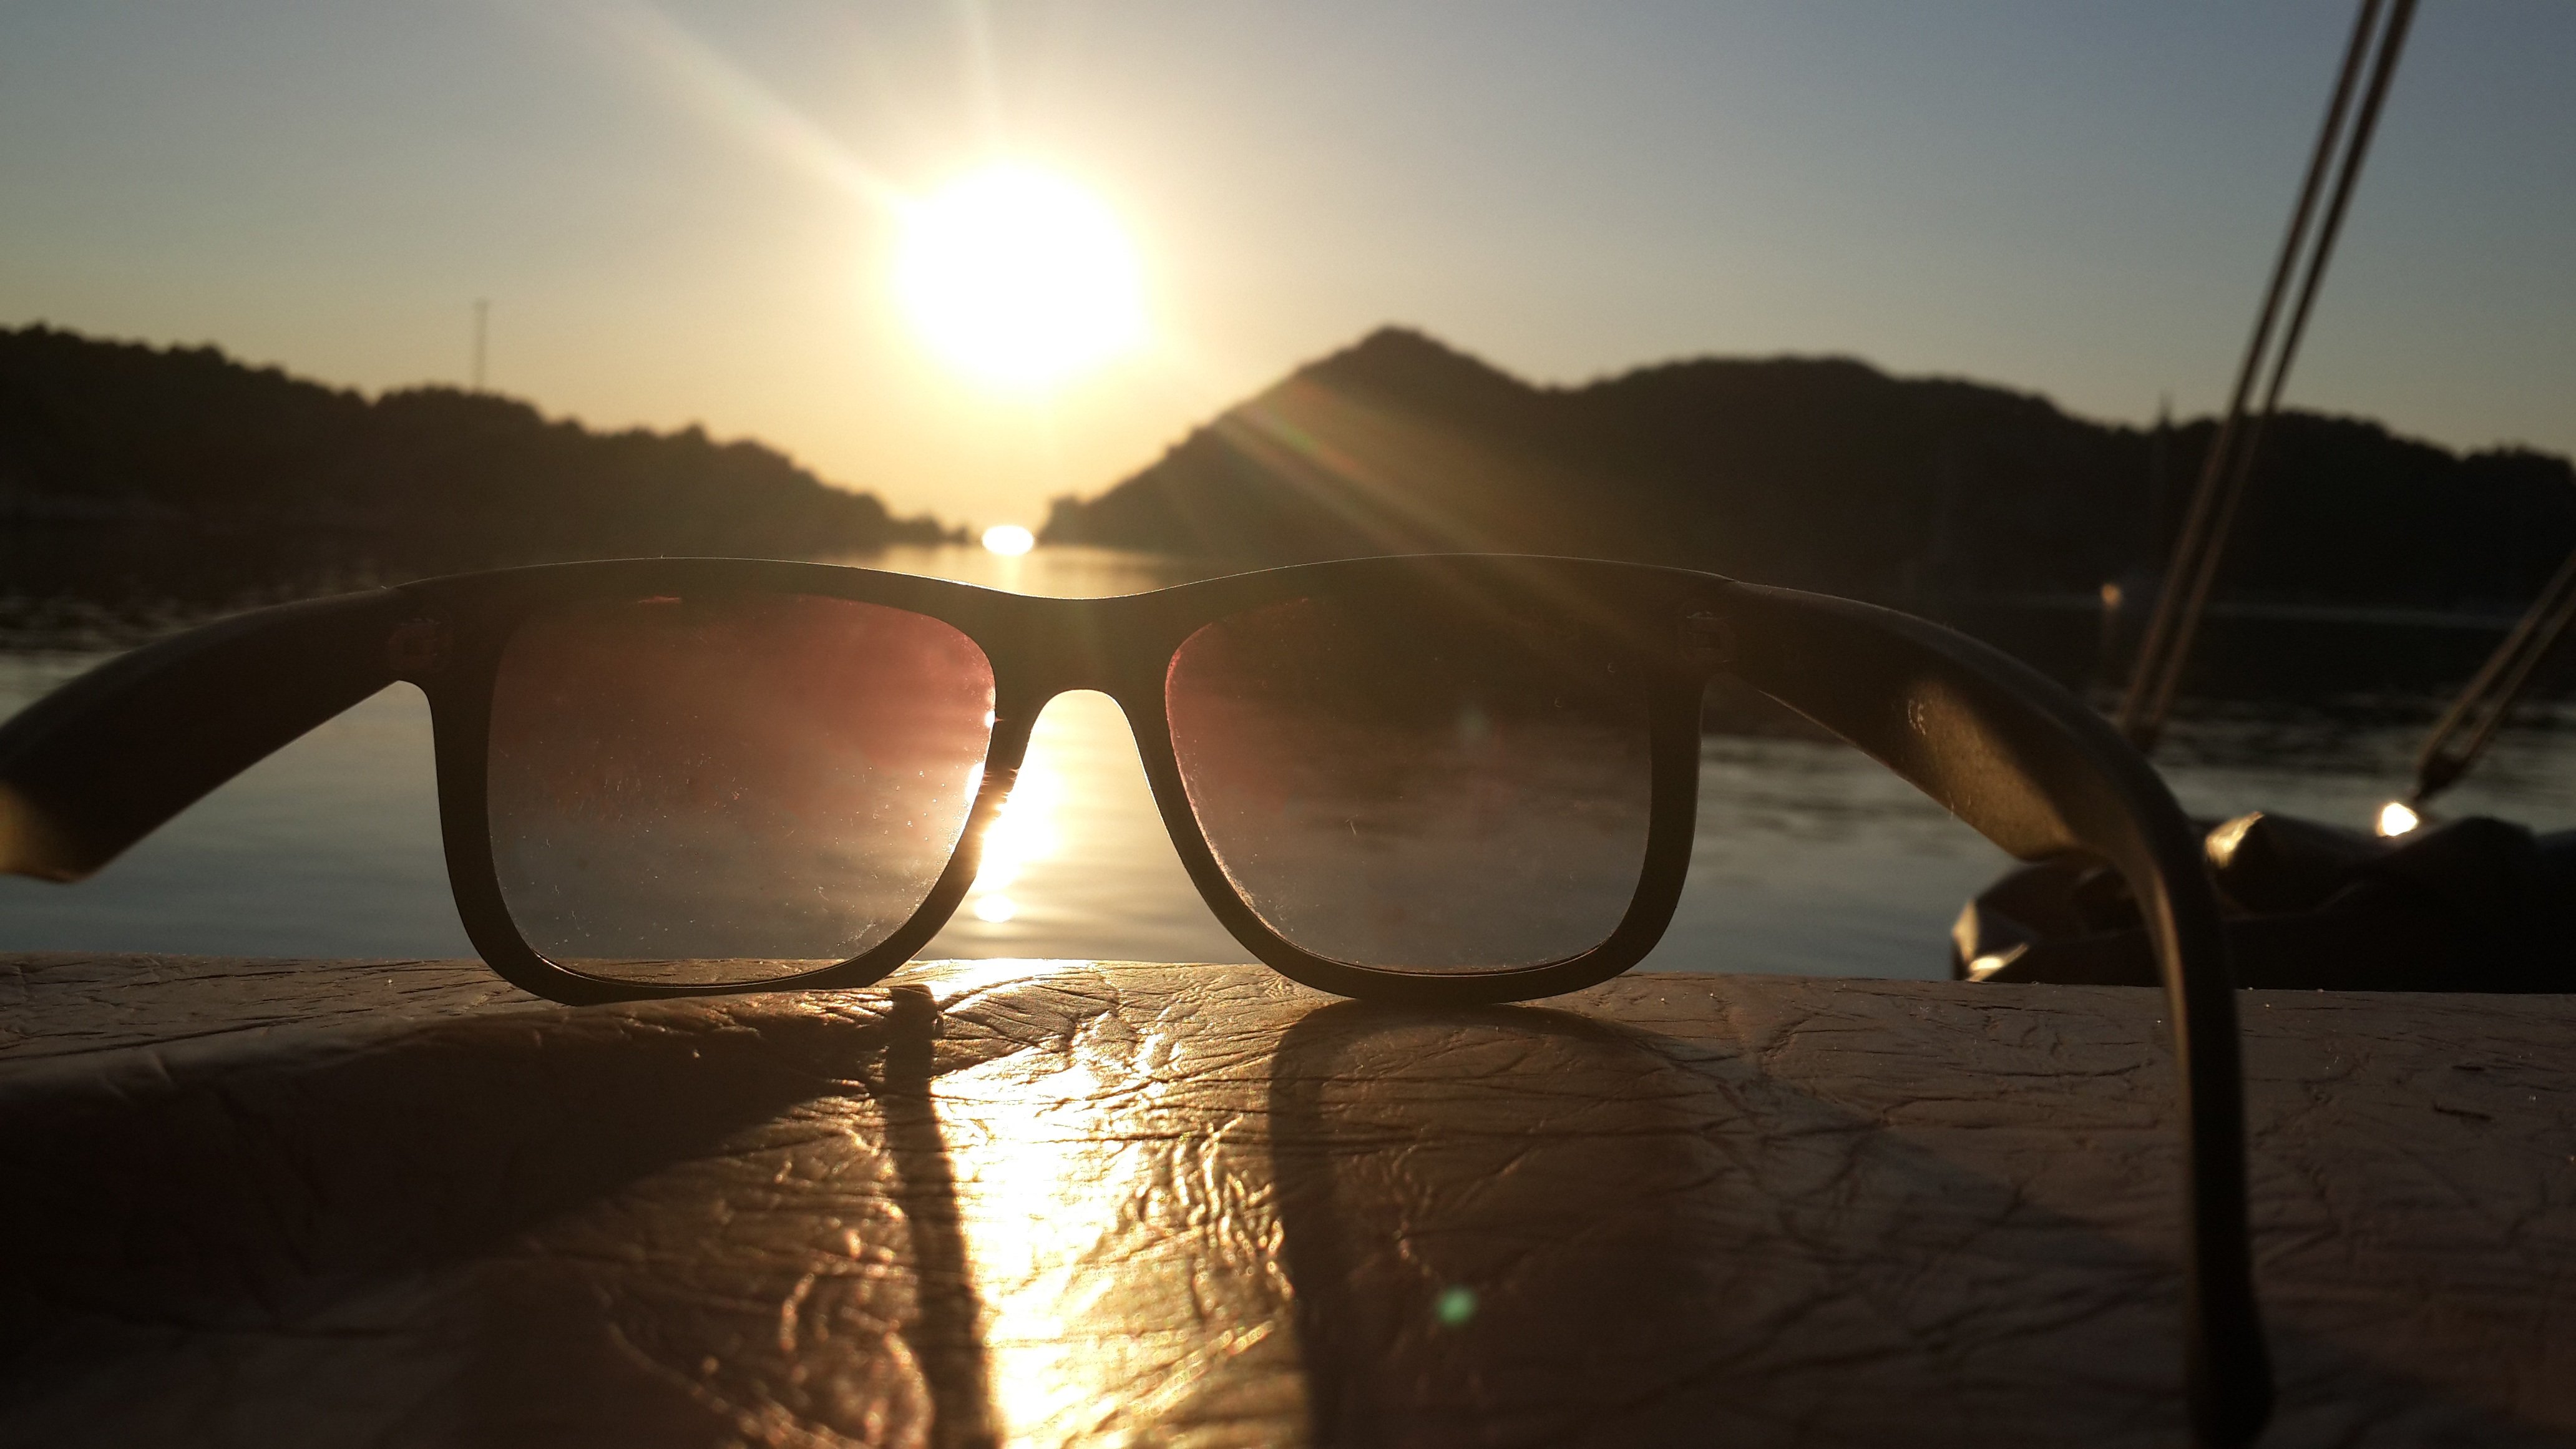 Фото отражение в очках. Солнечные очки. Солнце в очках. Отражение солнца в очках. Солнцезащитные очки и солнце.